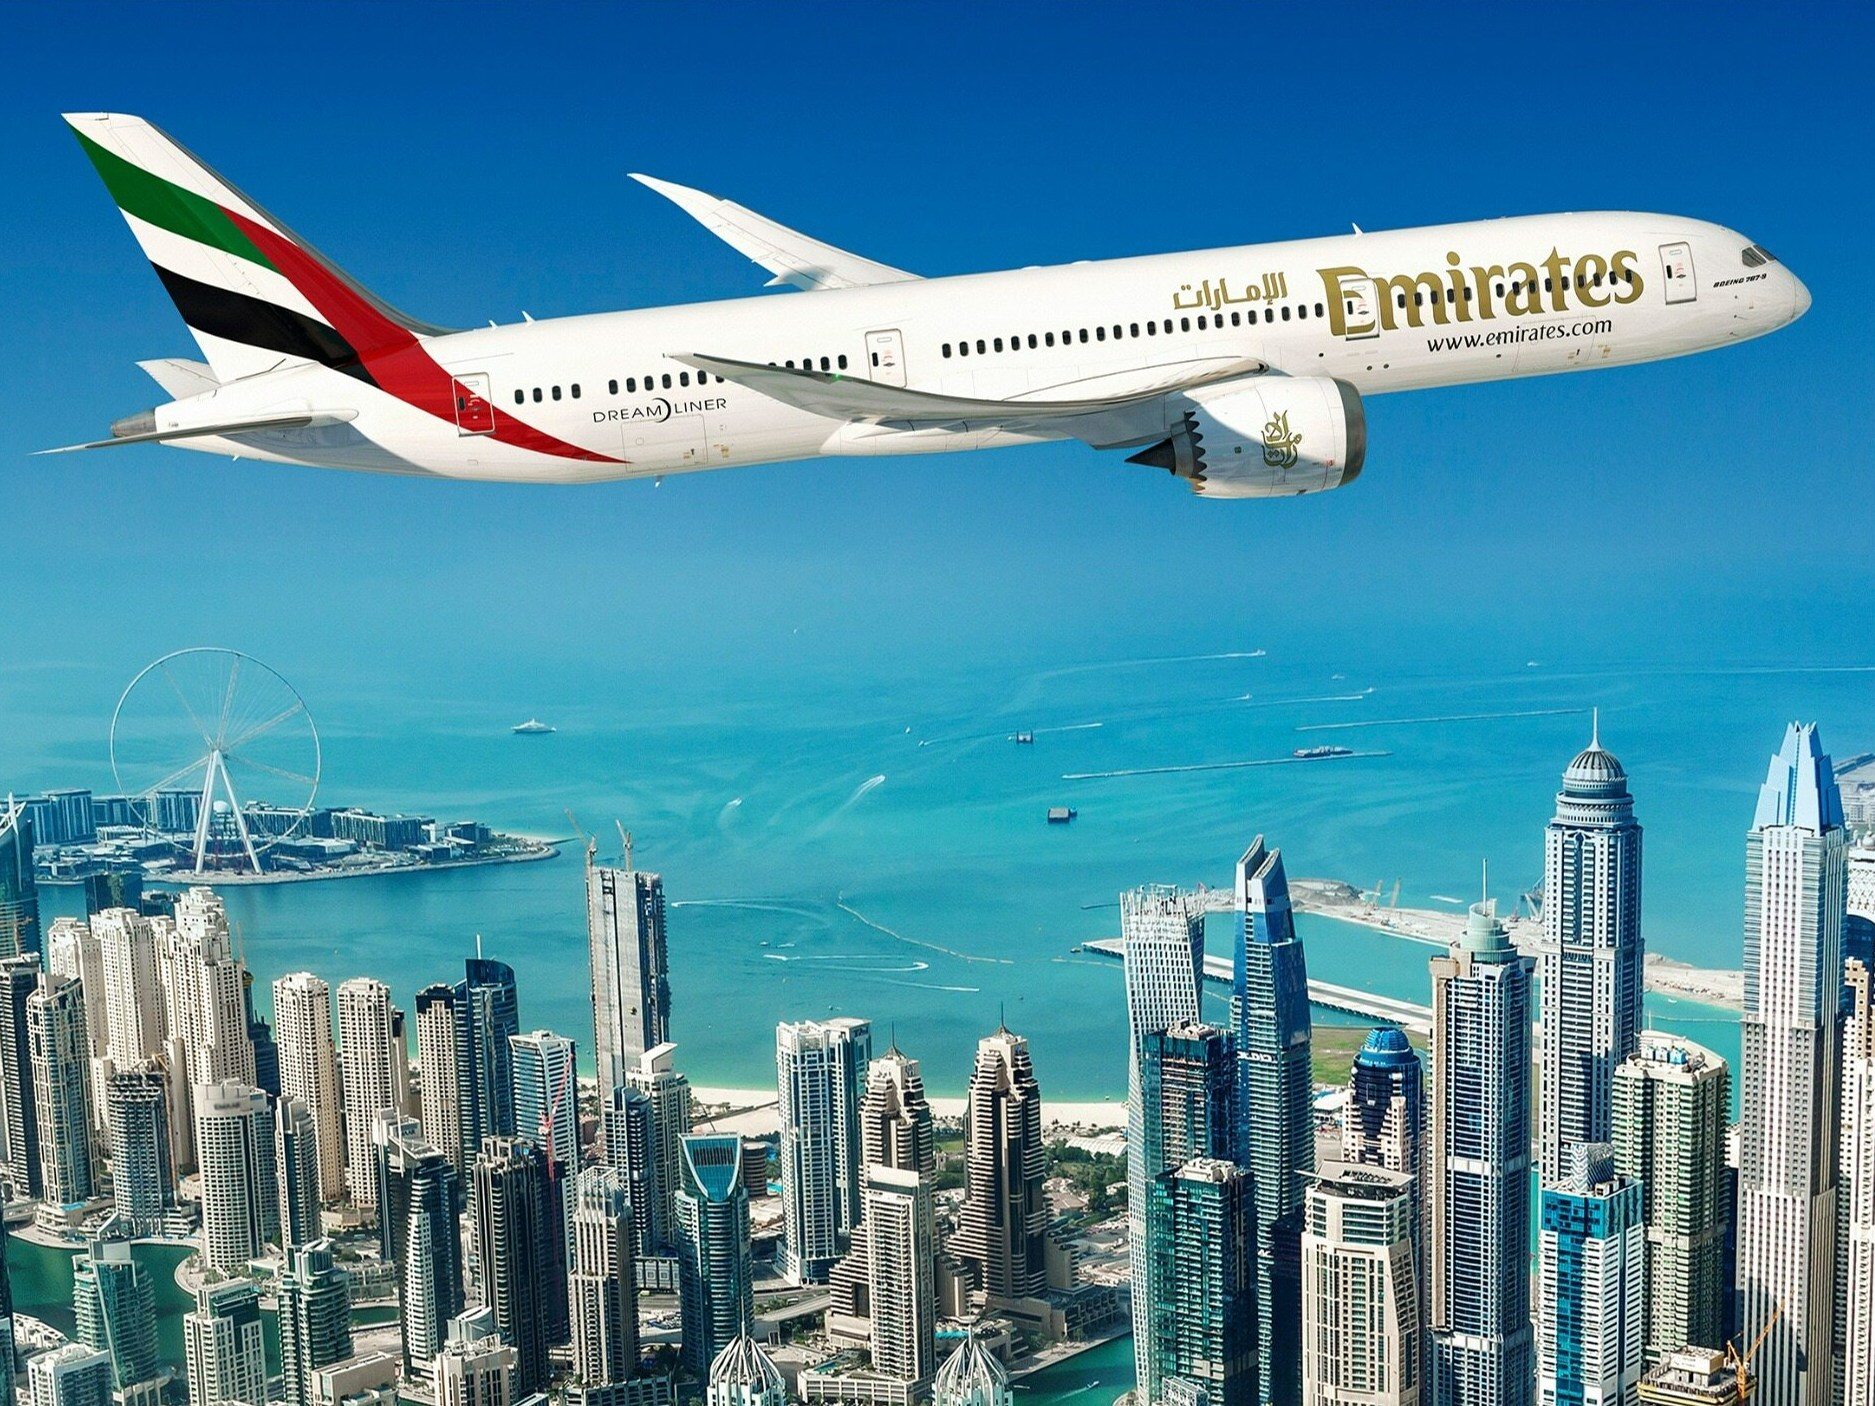 Авиарейсы в дубай. Эмиратес самолет. Дубай авиакомпания Emirates Airlines. Эмирейтс рейс Дубай Майами. Дубай Эмирейтс самолет 737.